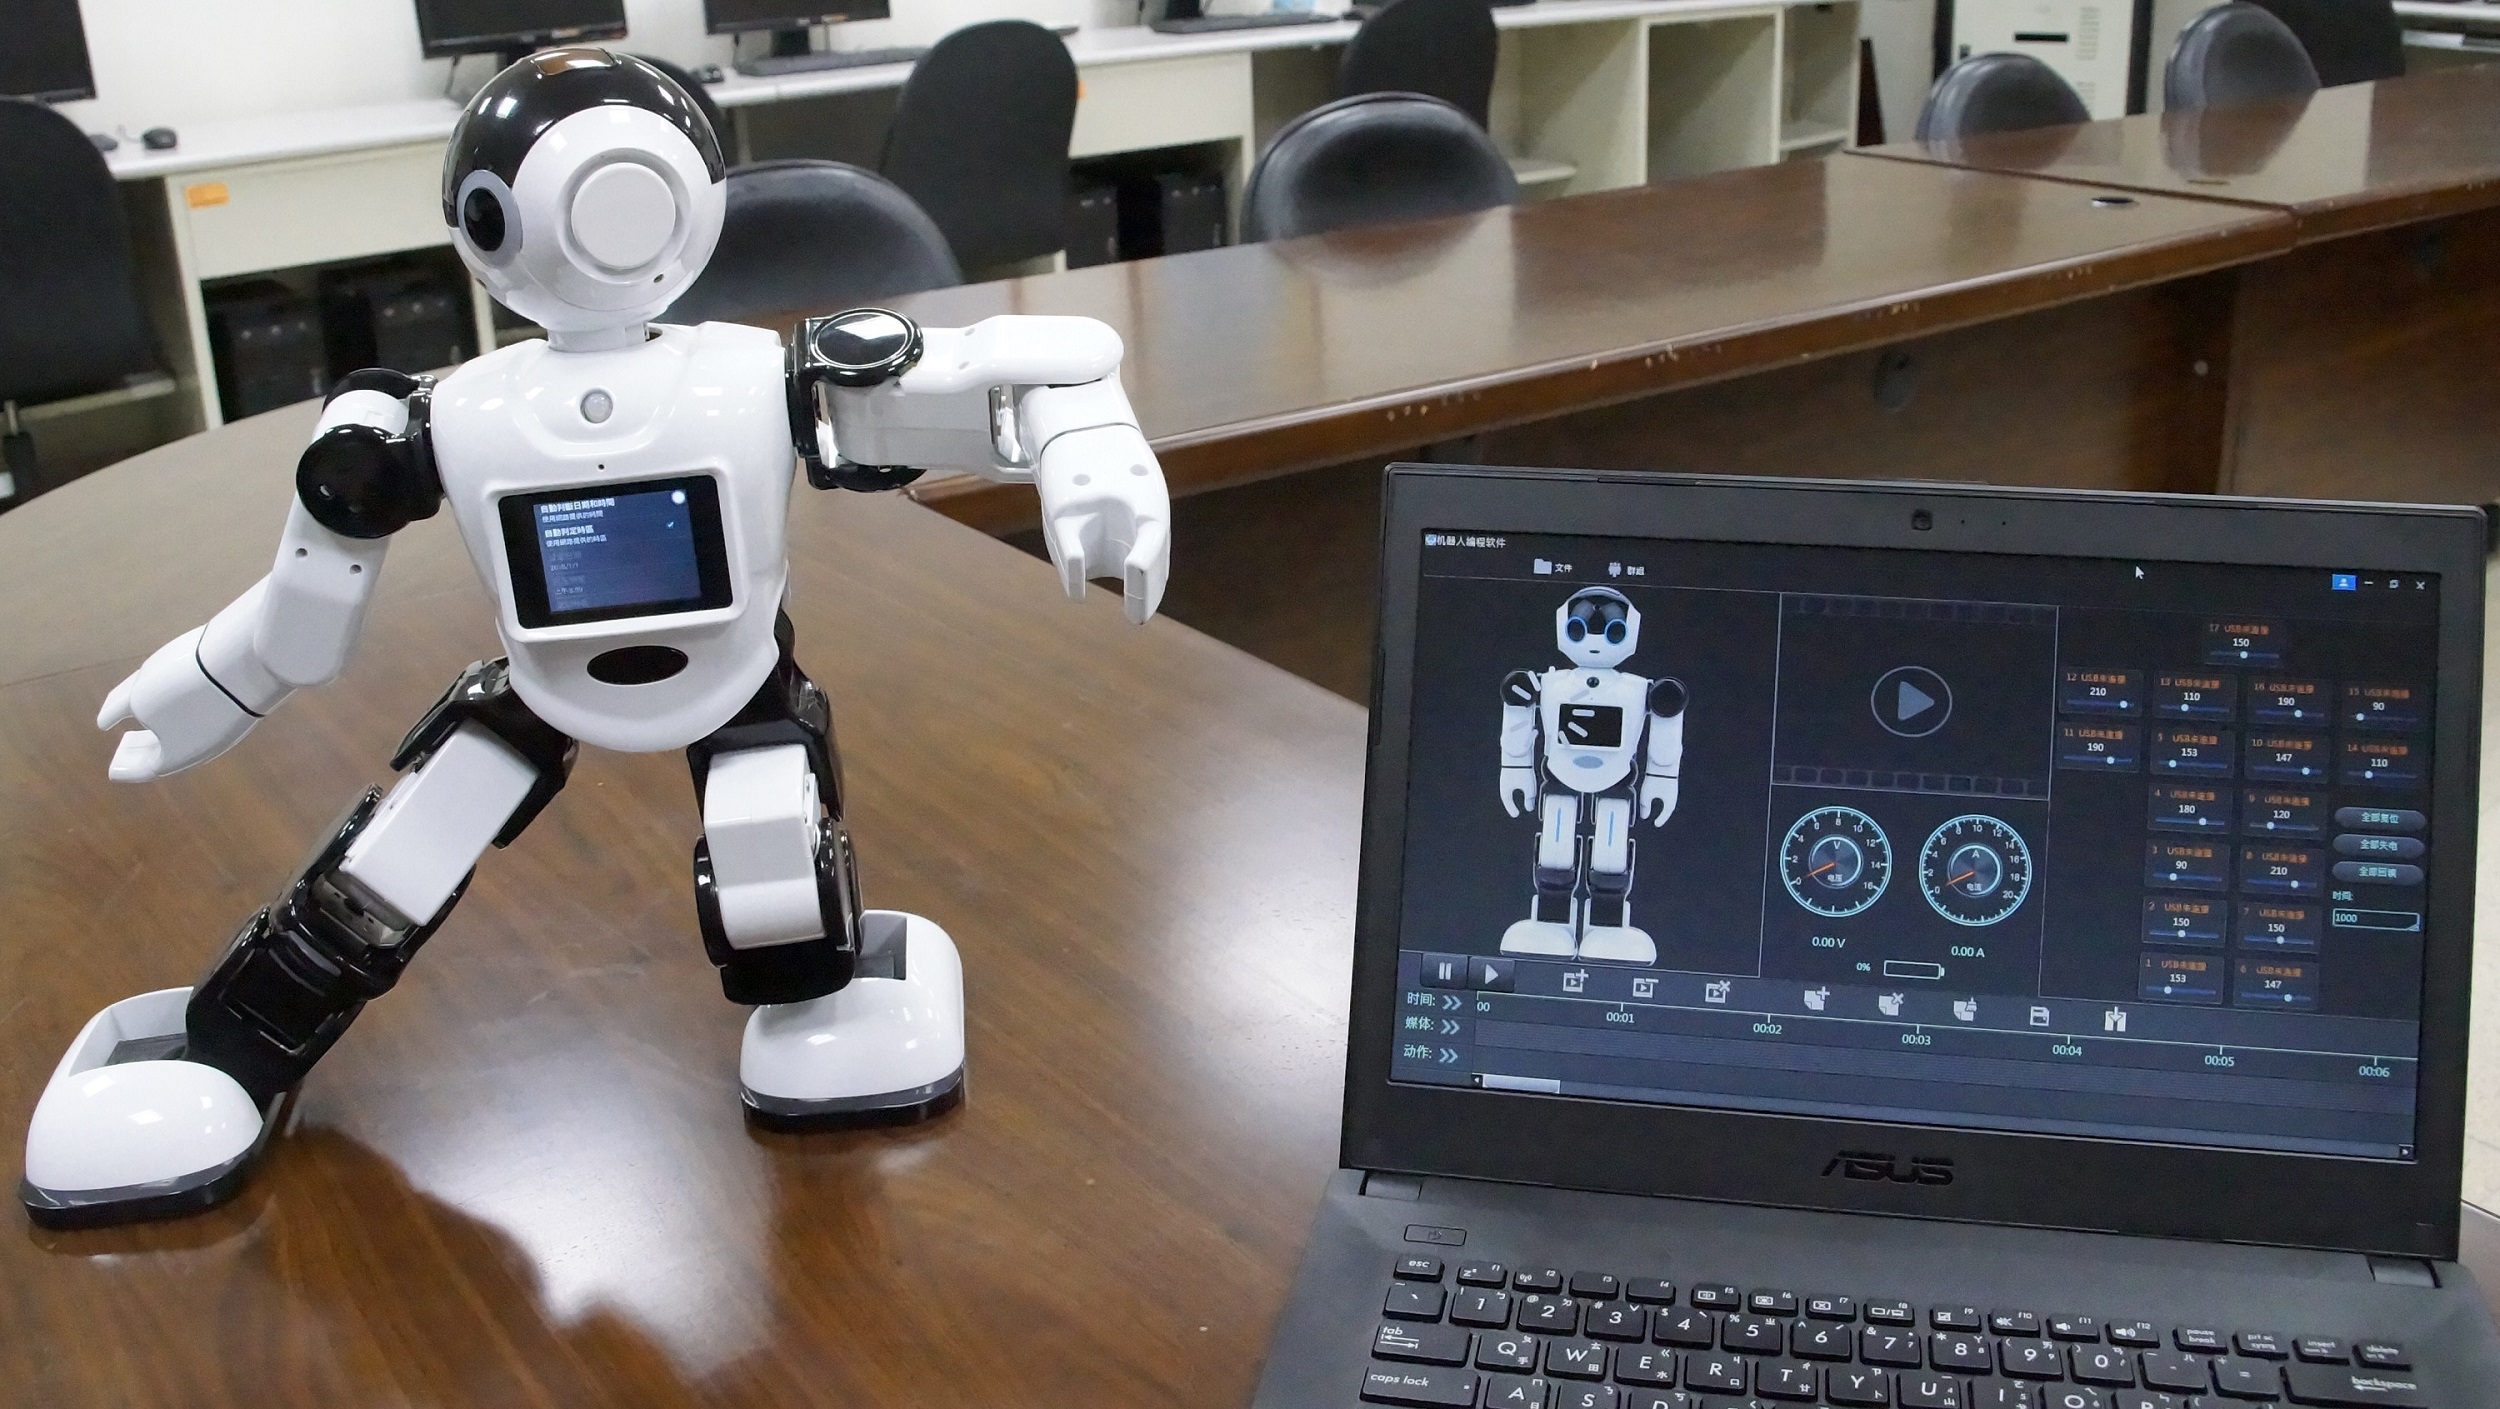 精卡科技公司將提供該公司智慧機器人的軟體開發套件（SDK）給聖約大資工系師生，用於開發機器人的應用程式